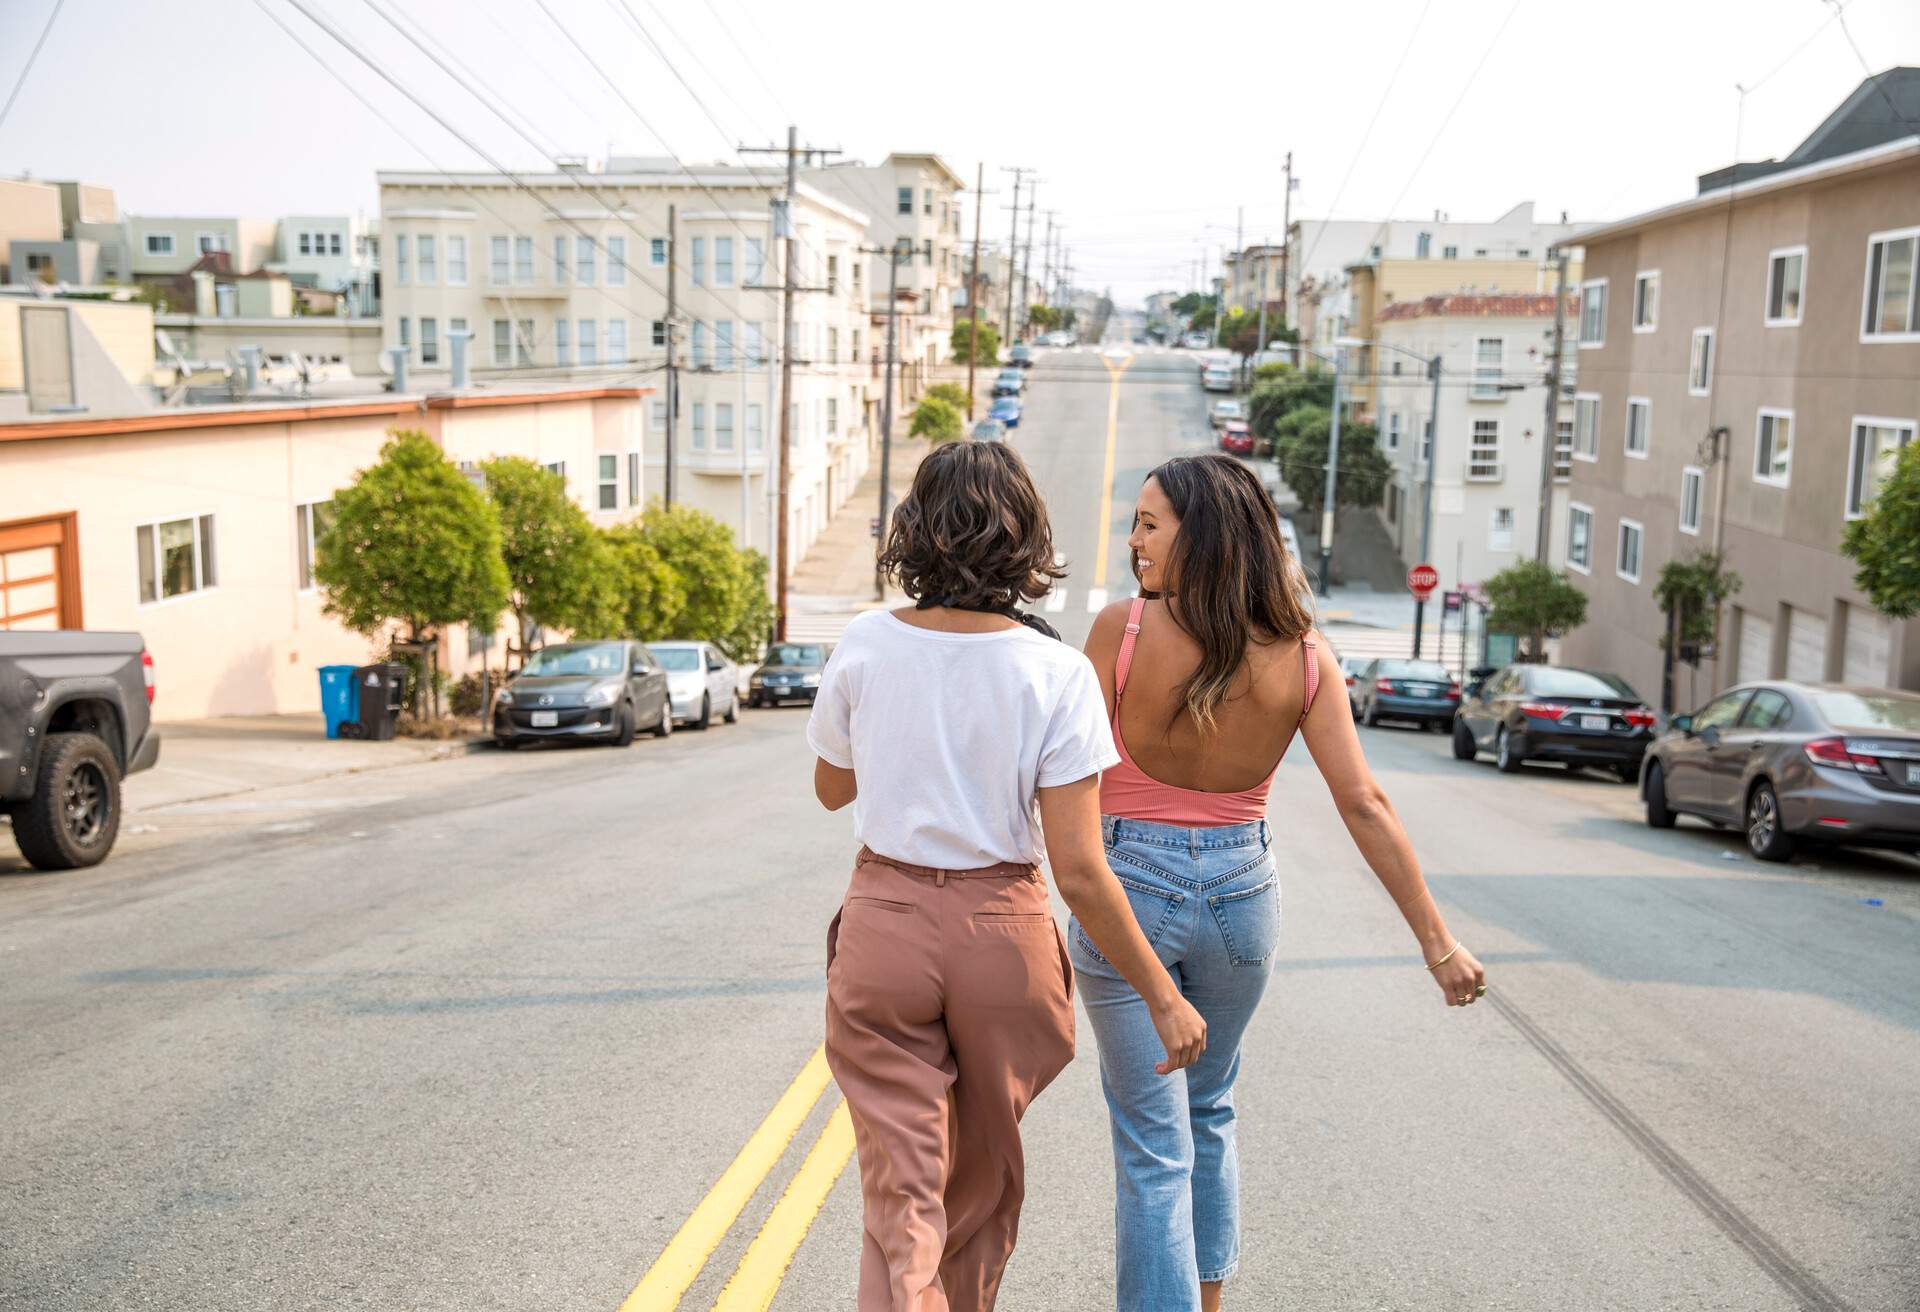 USA_SAN_FRANCISCO_PEOPLE_WOMEN_WALKING_STREET